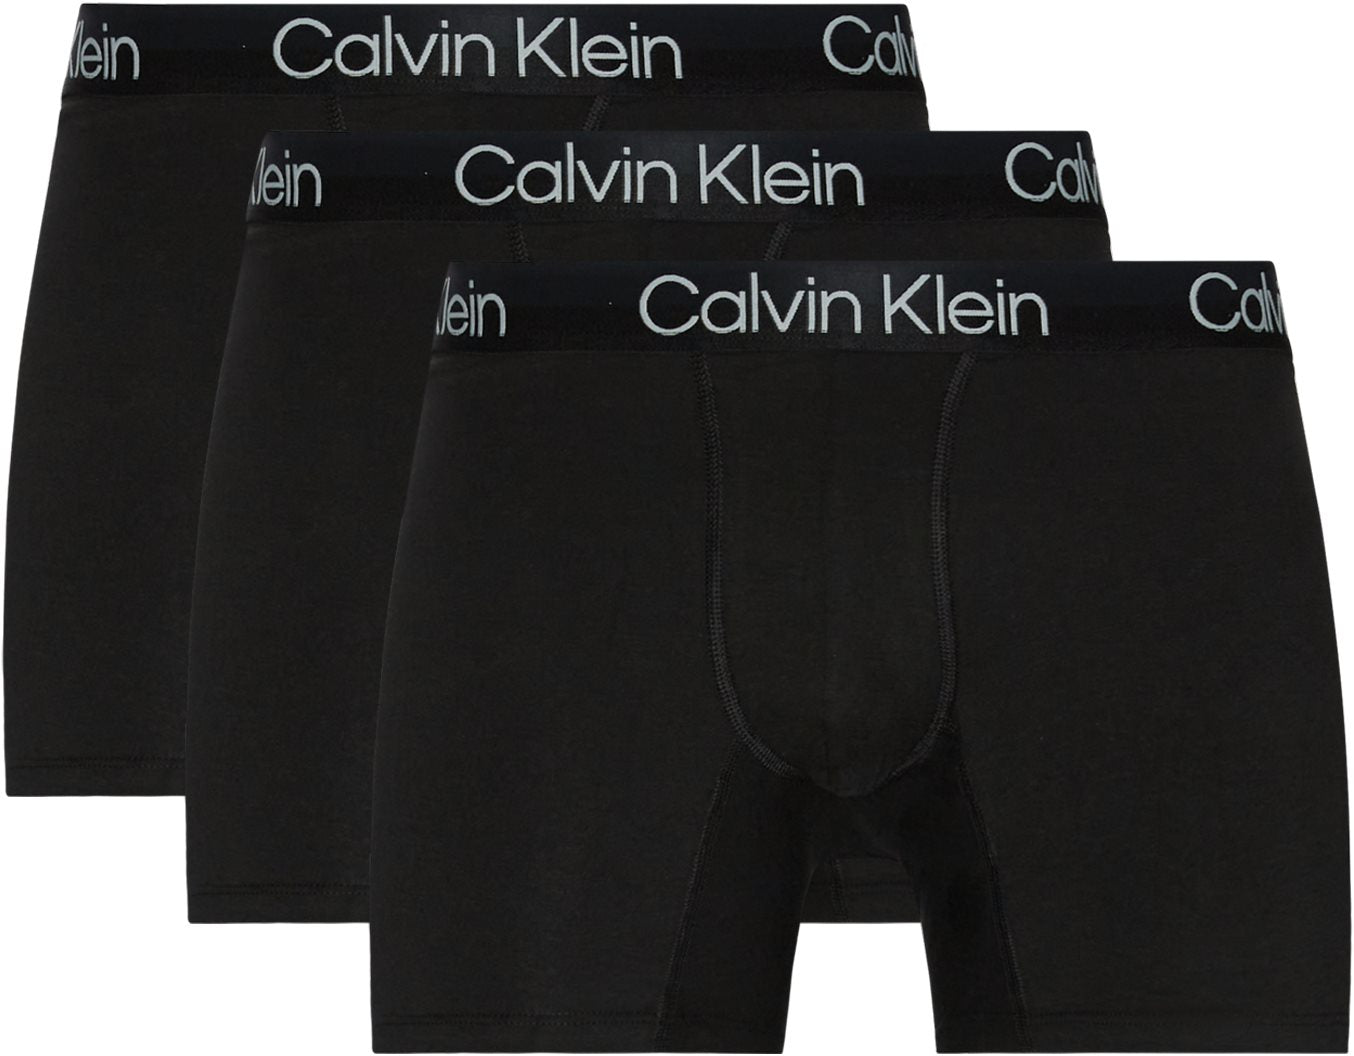 Calvin Klein 3 Pack Modern Structure Boxer Briefs - Black – Trunks